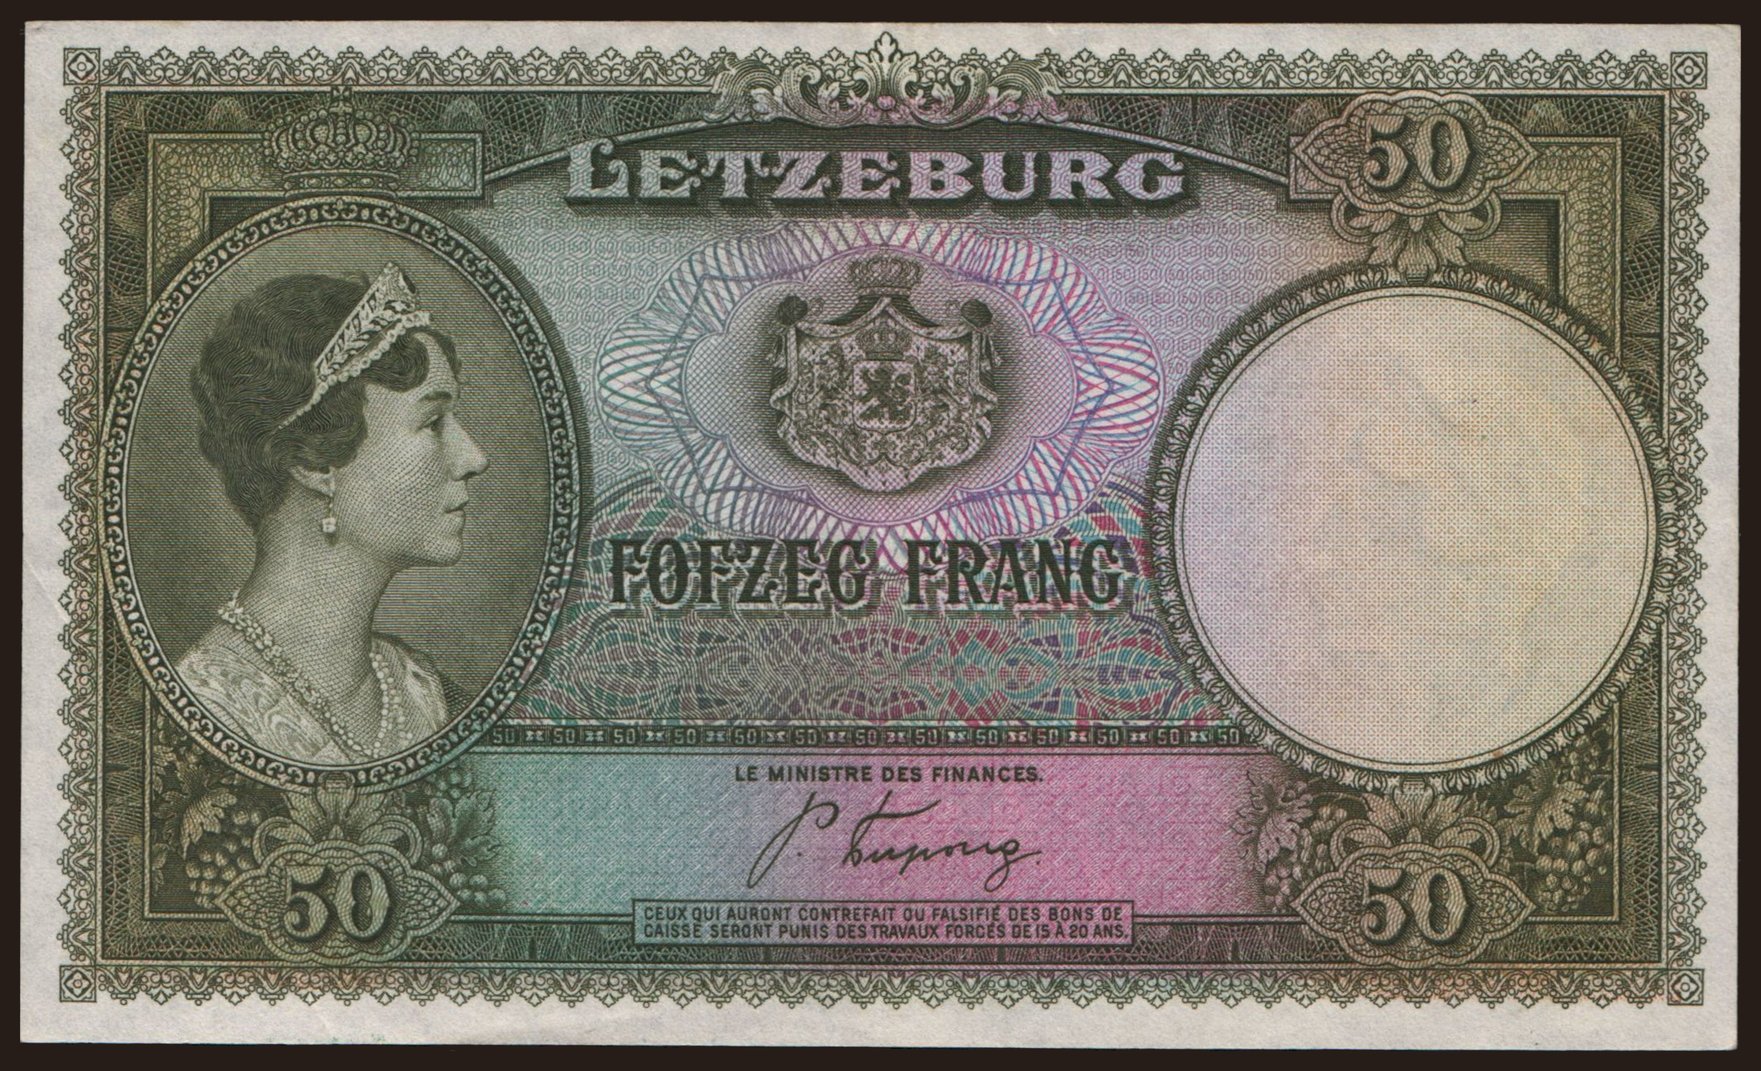 50 francs, 1944